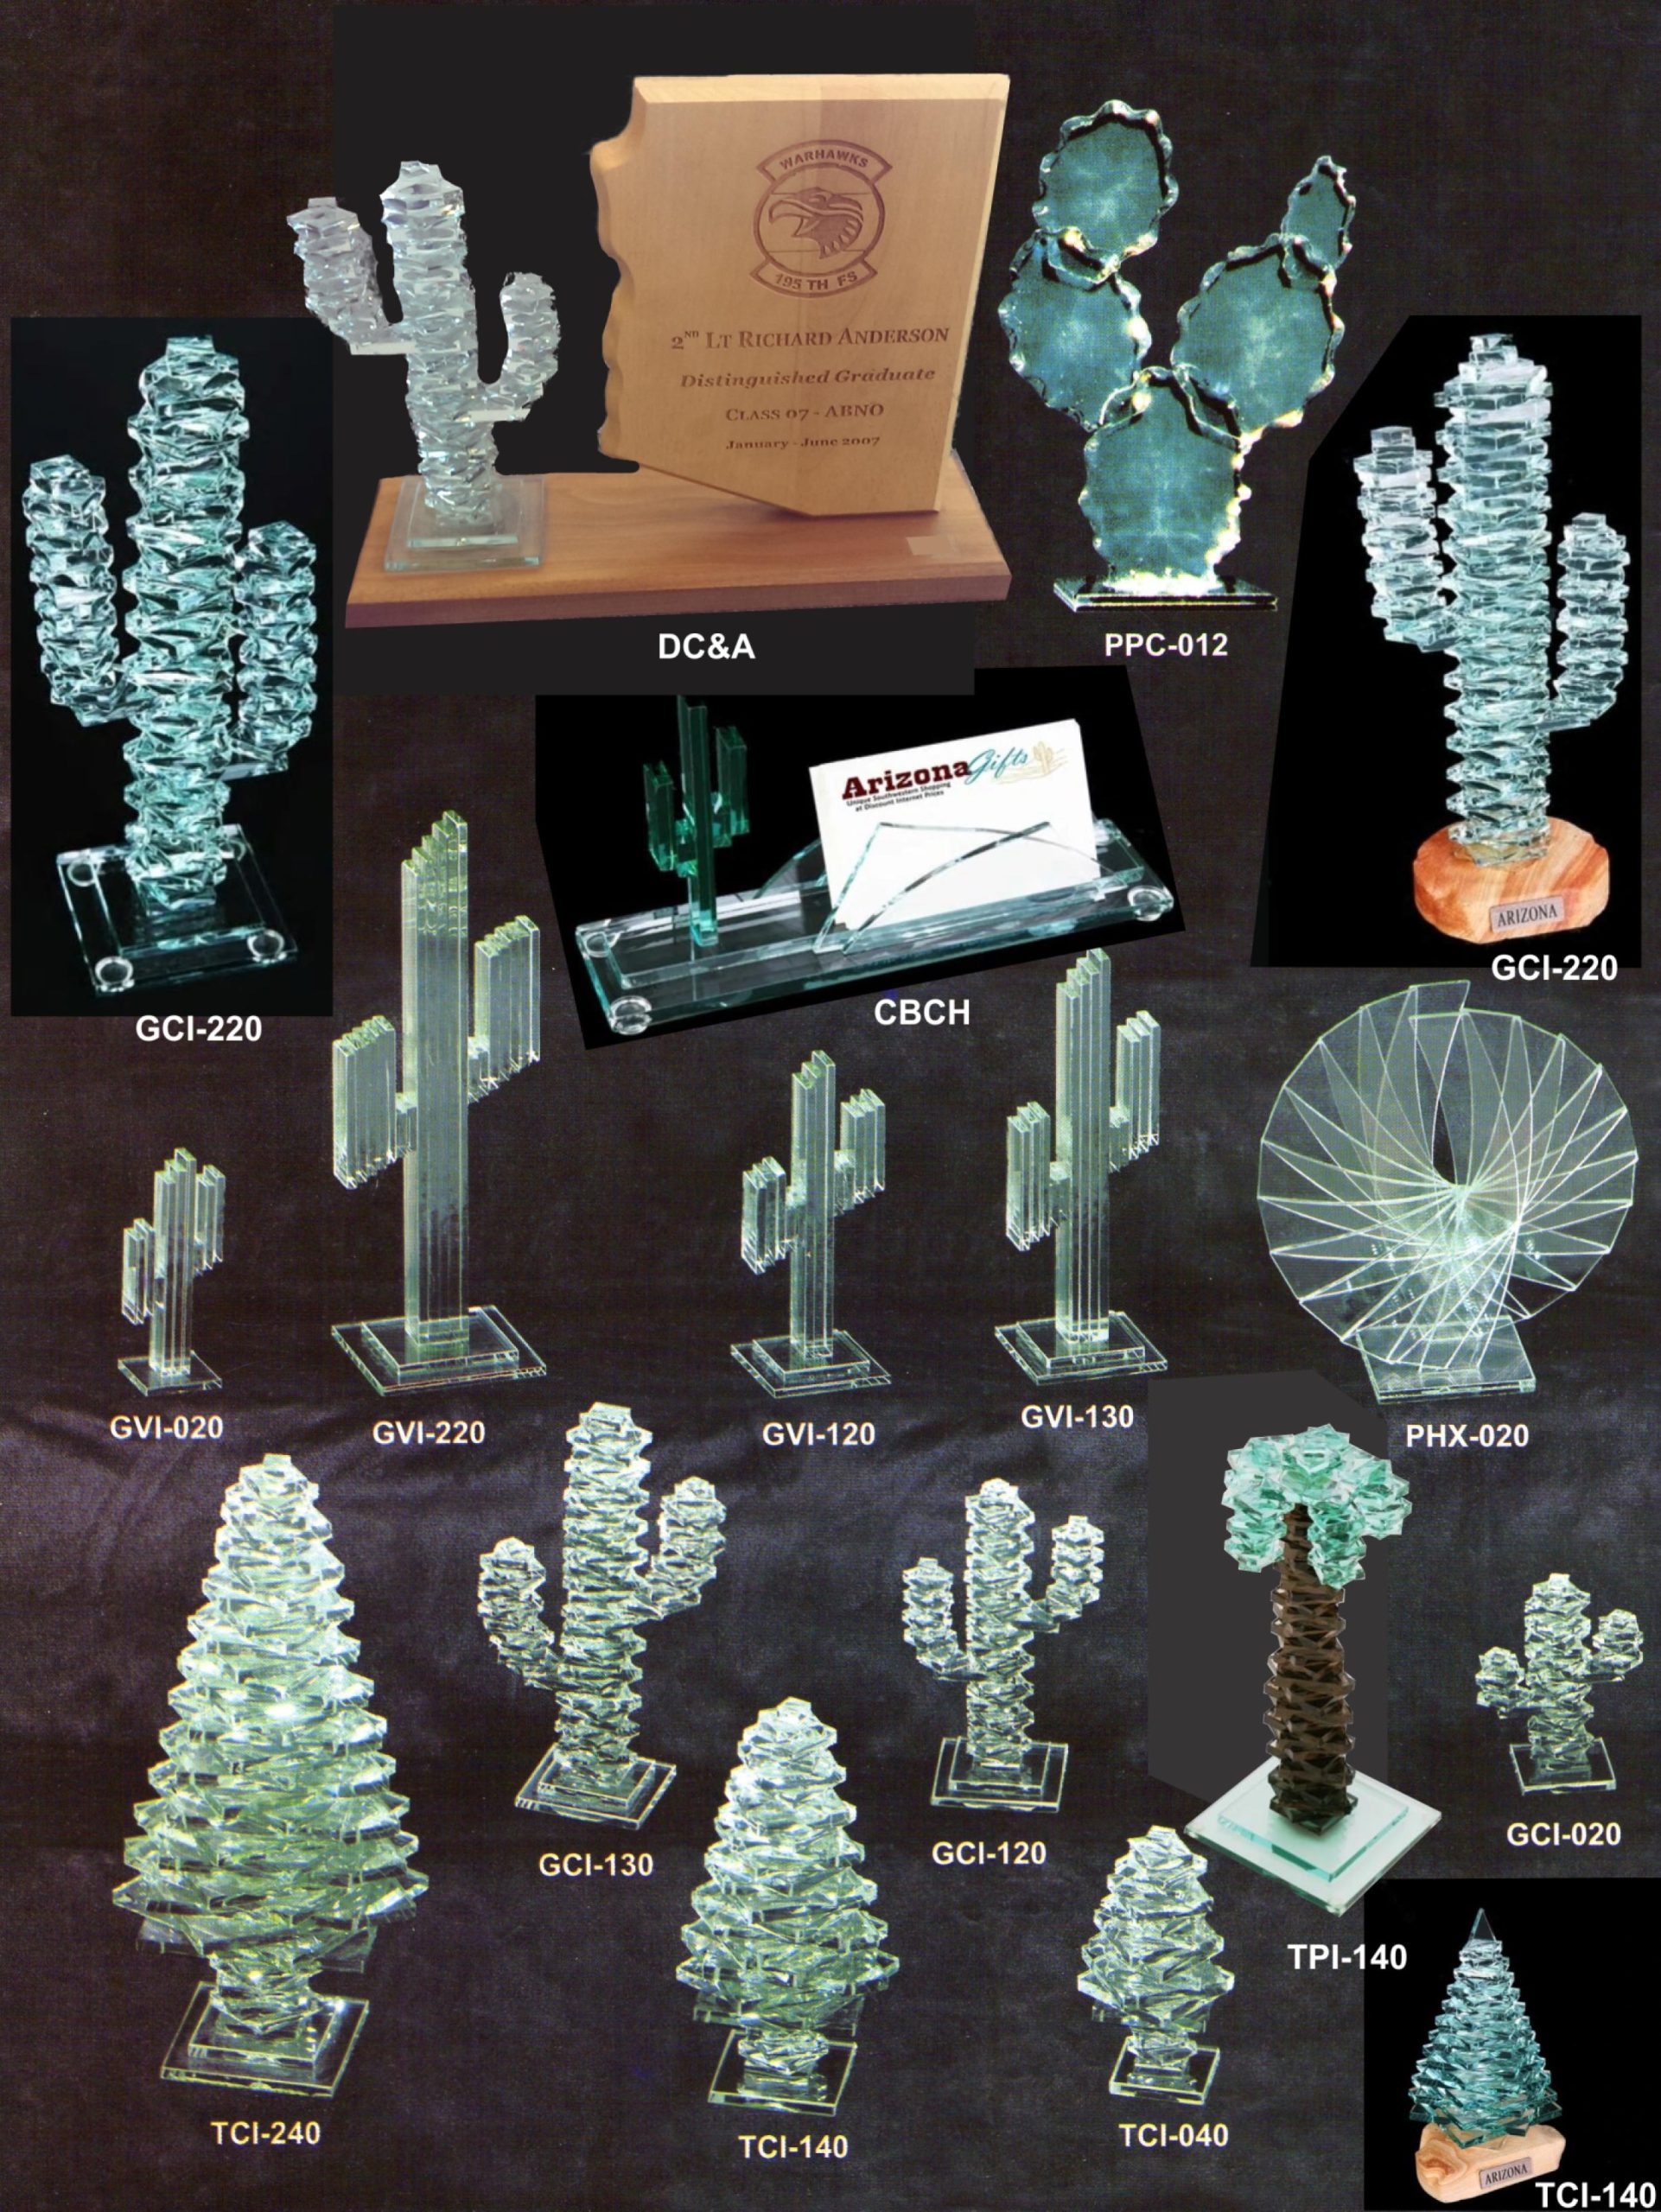 Glass Cactus